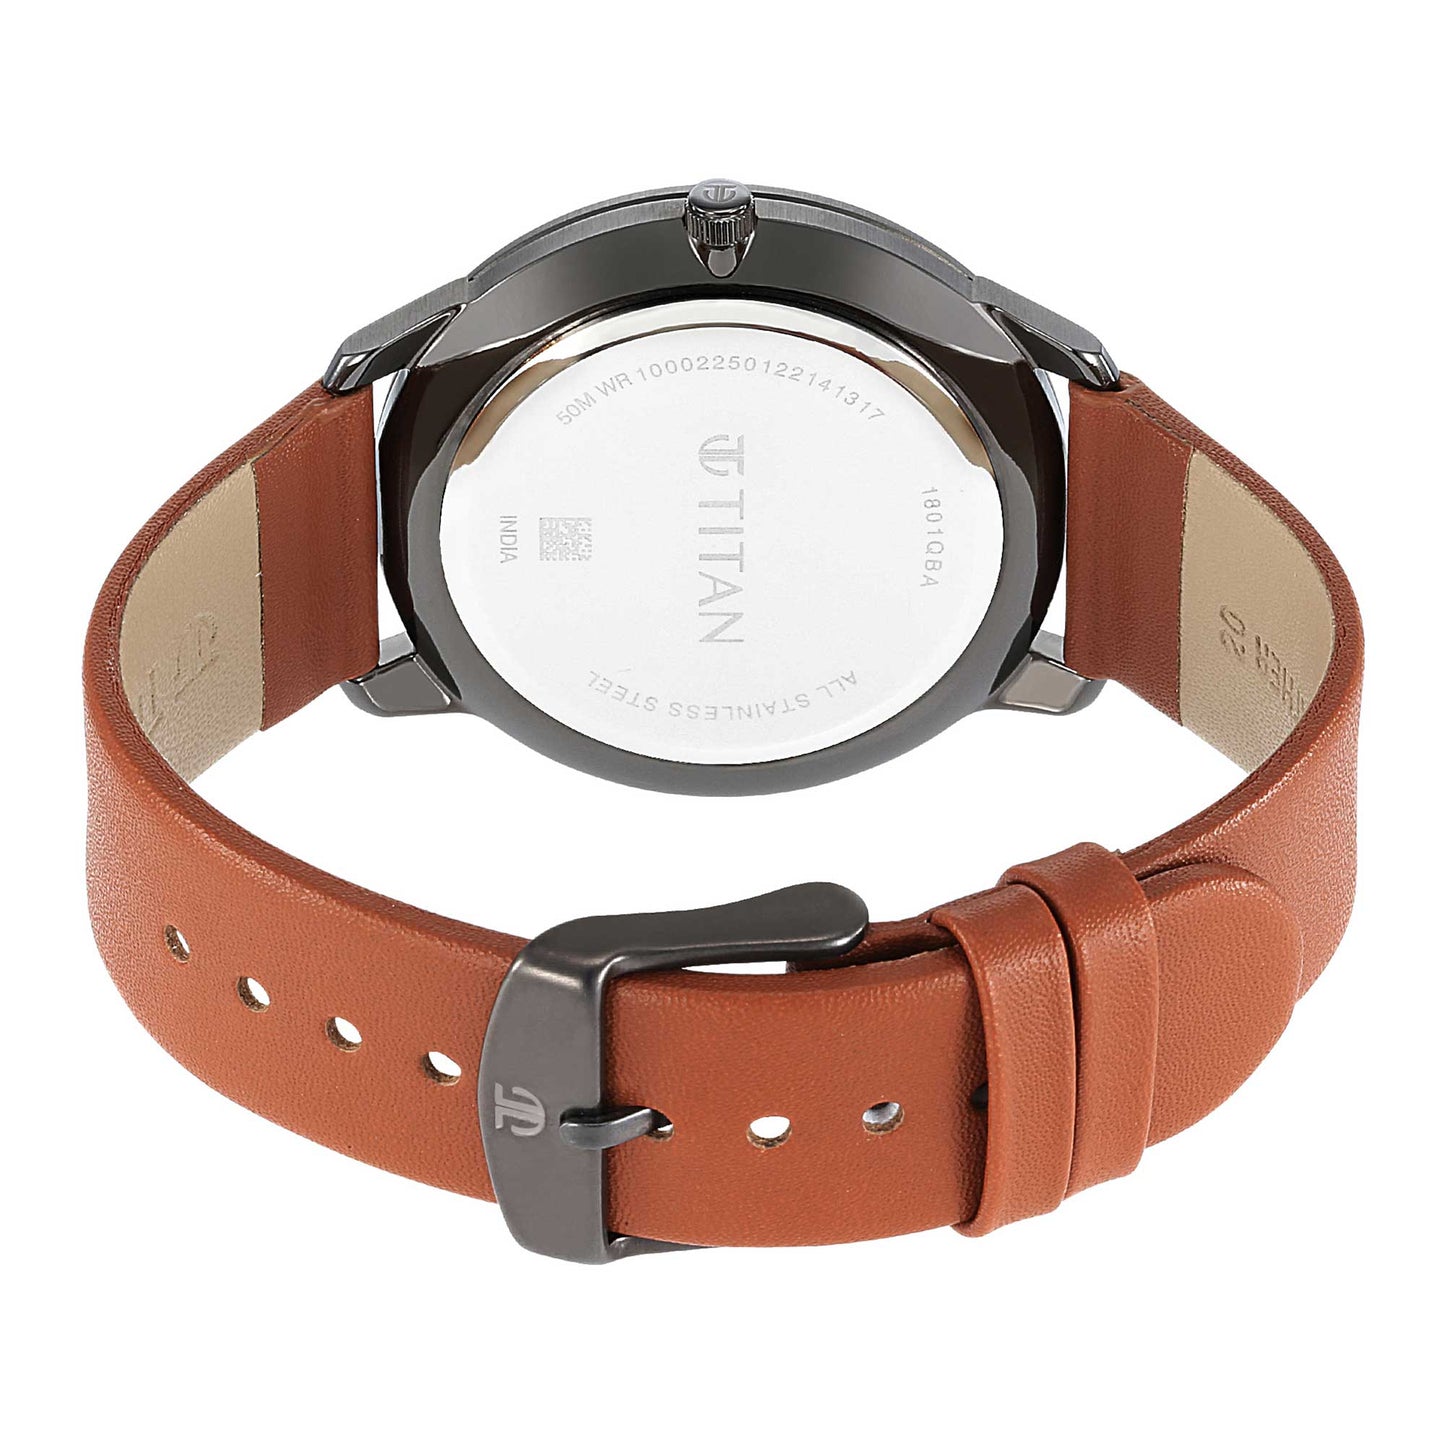 Titan Geometrix Silver Dial Analog Leather Strap watch for Men